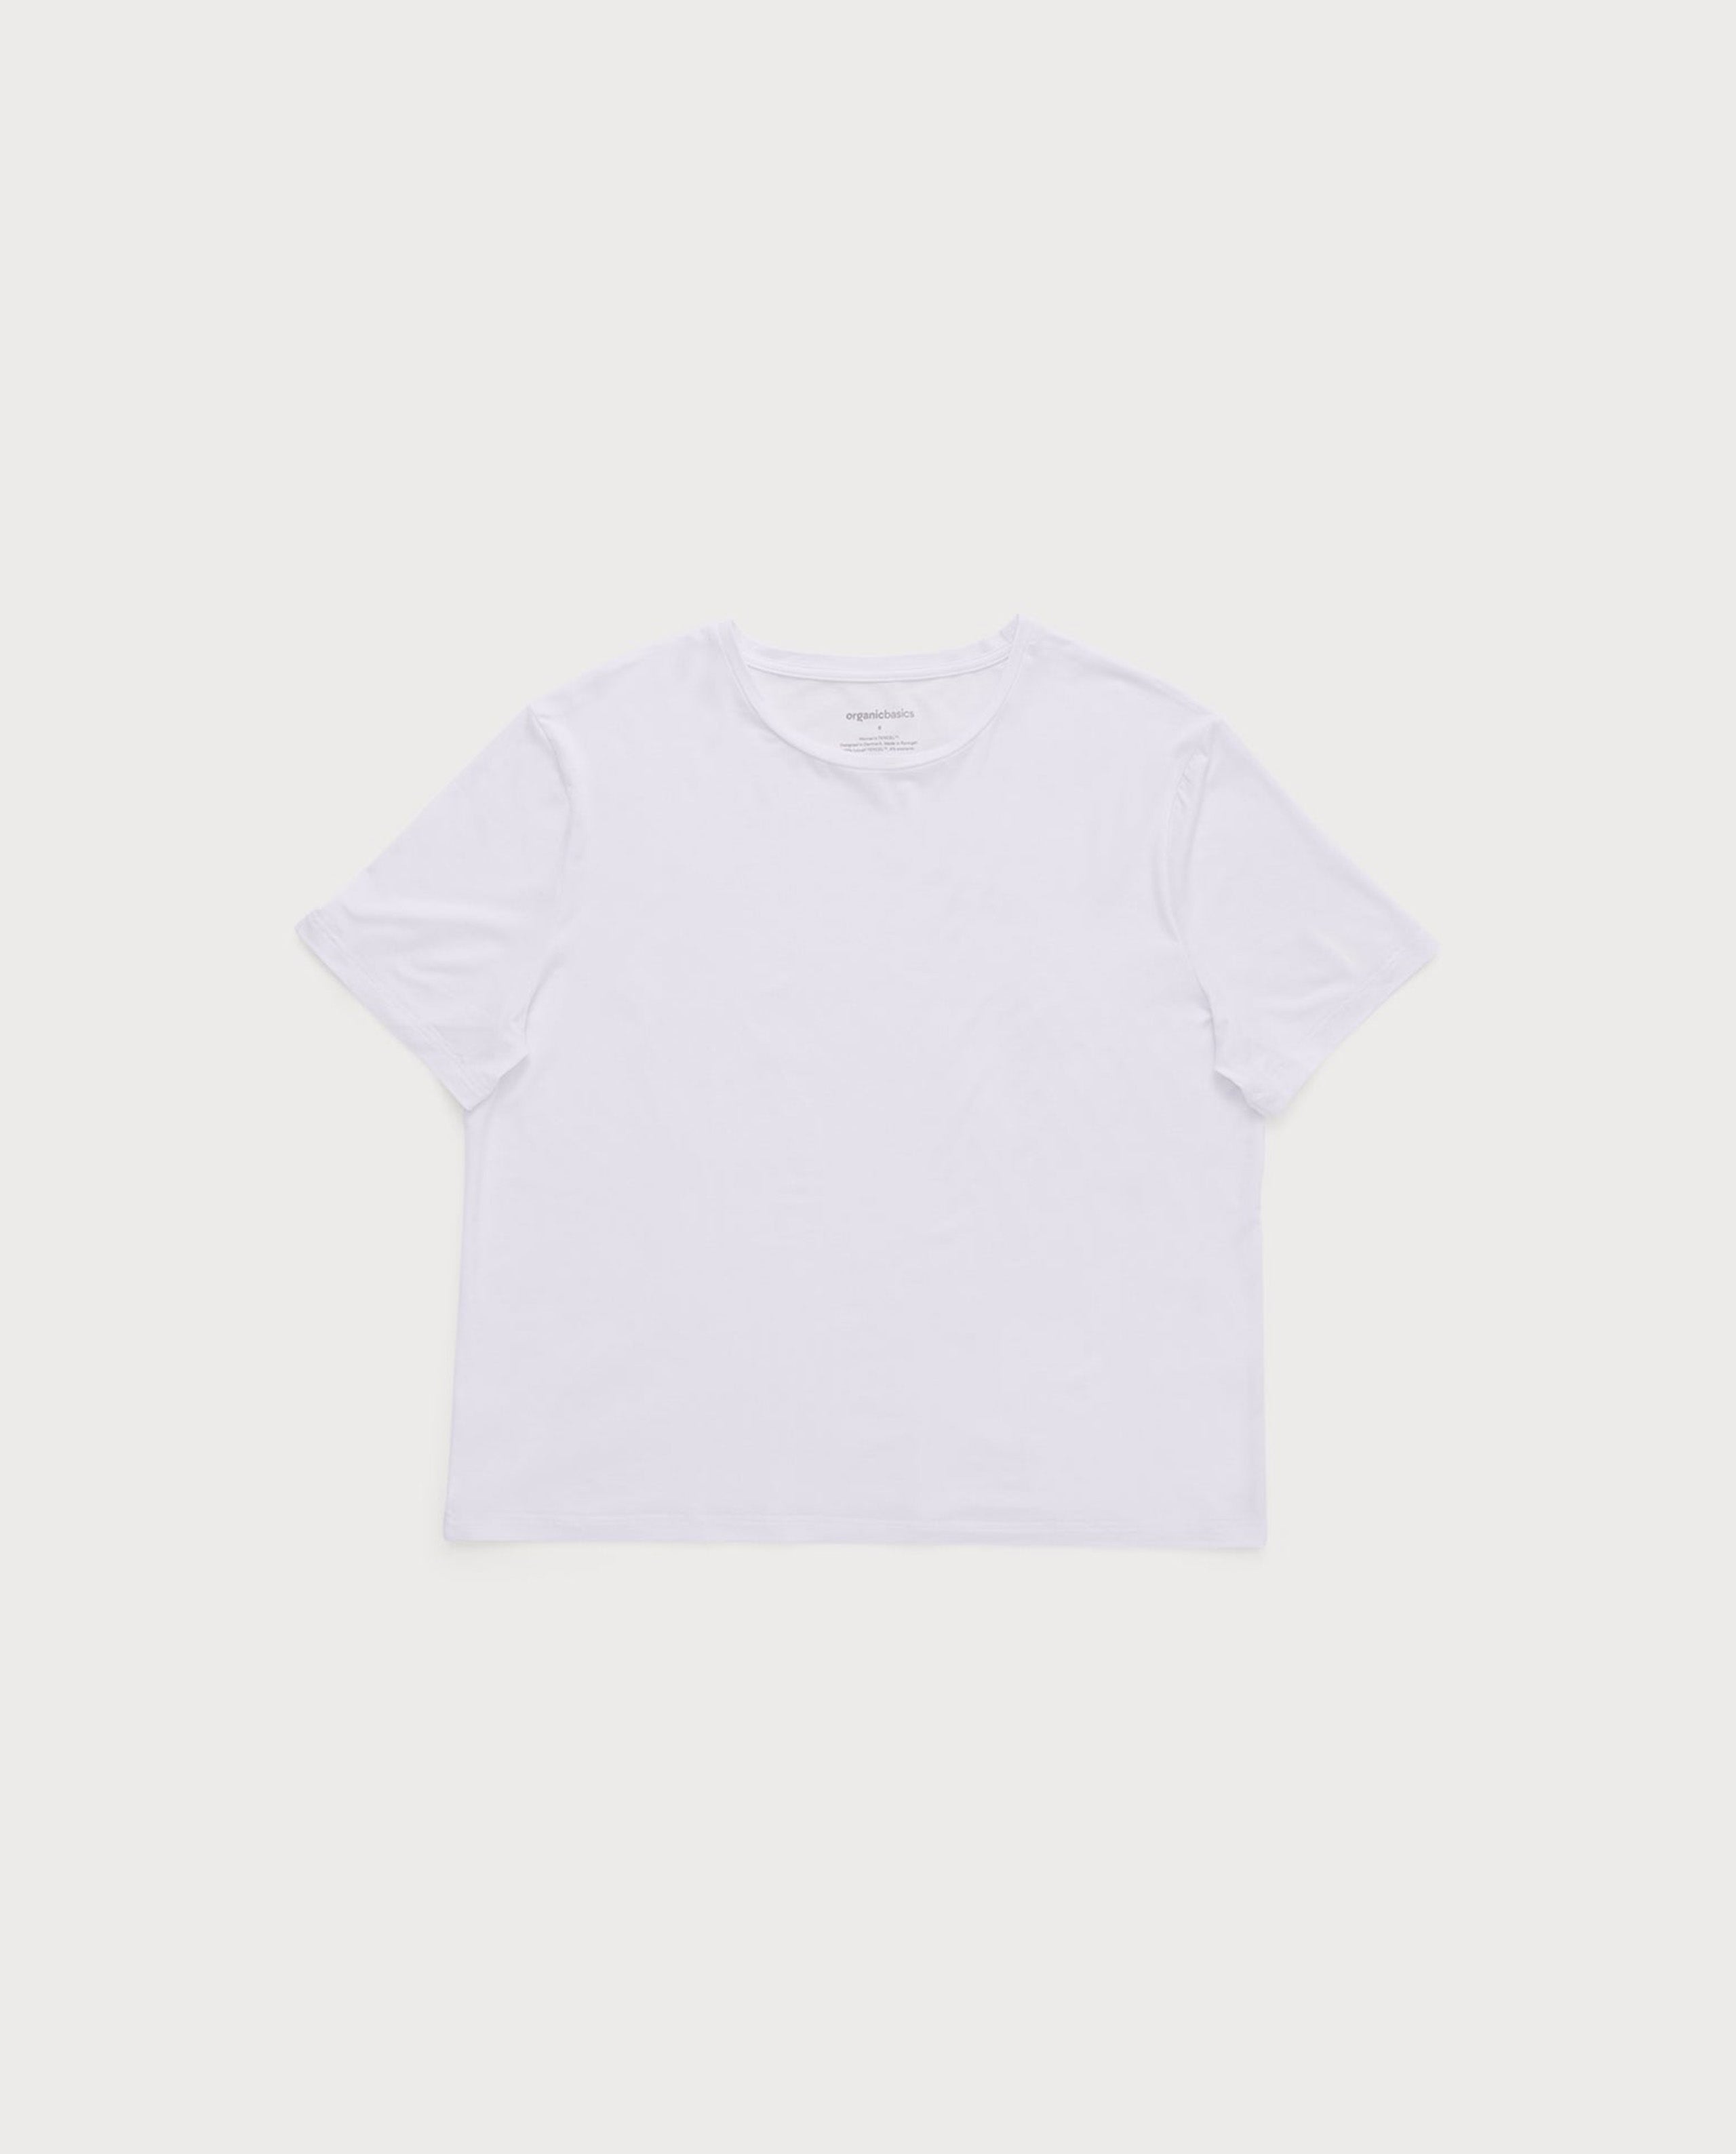 marché commun organic basics femme t-shirt tencel naturel manches courtes blanc